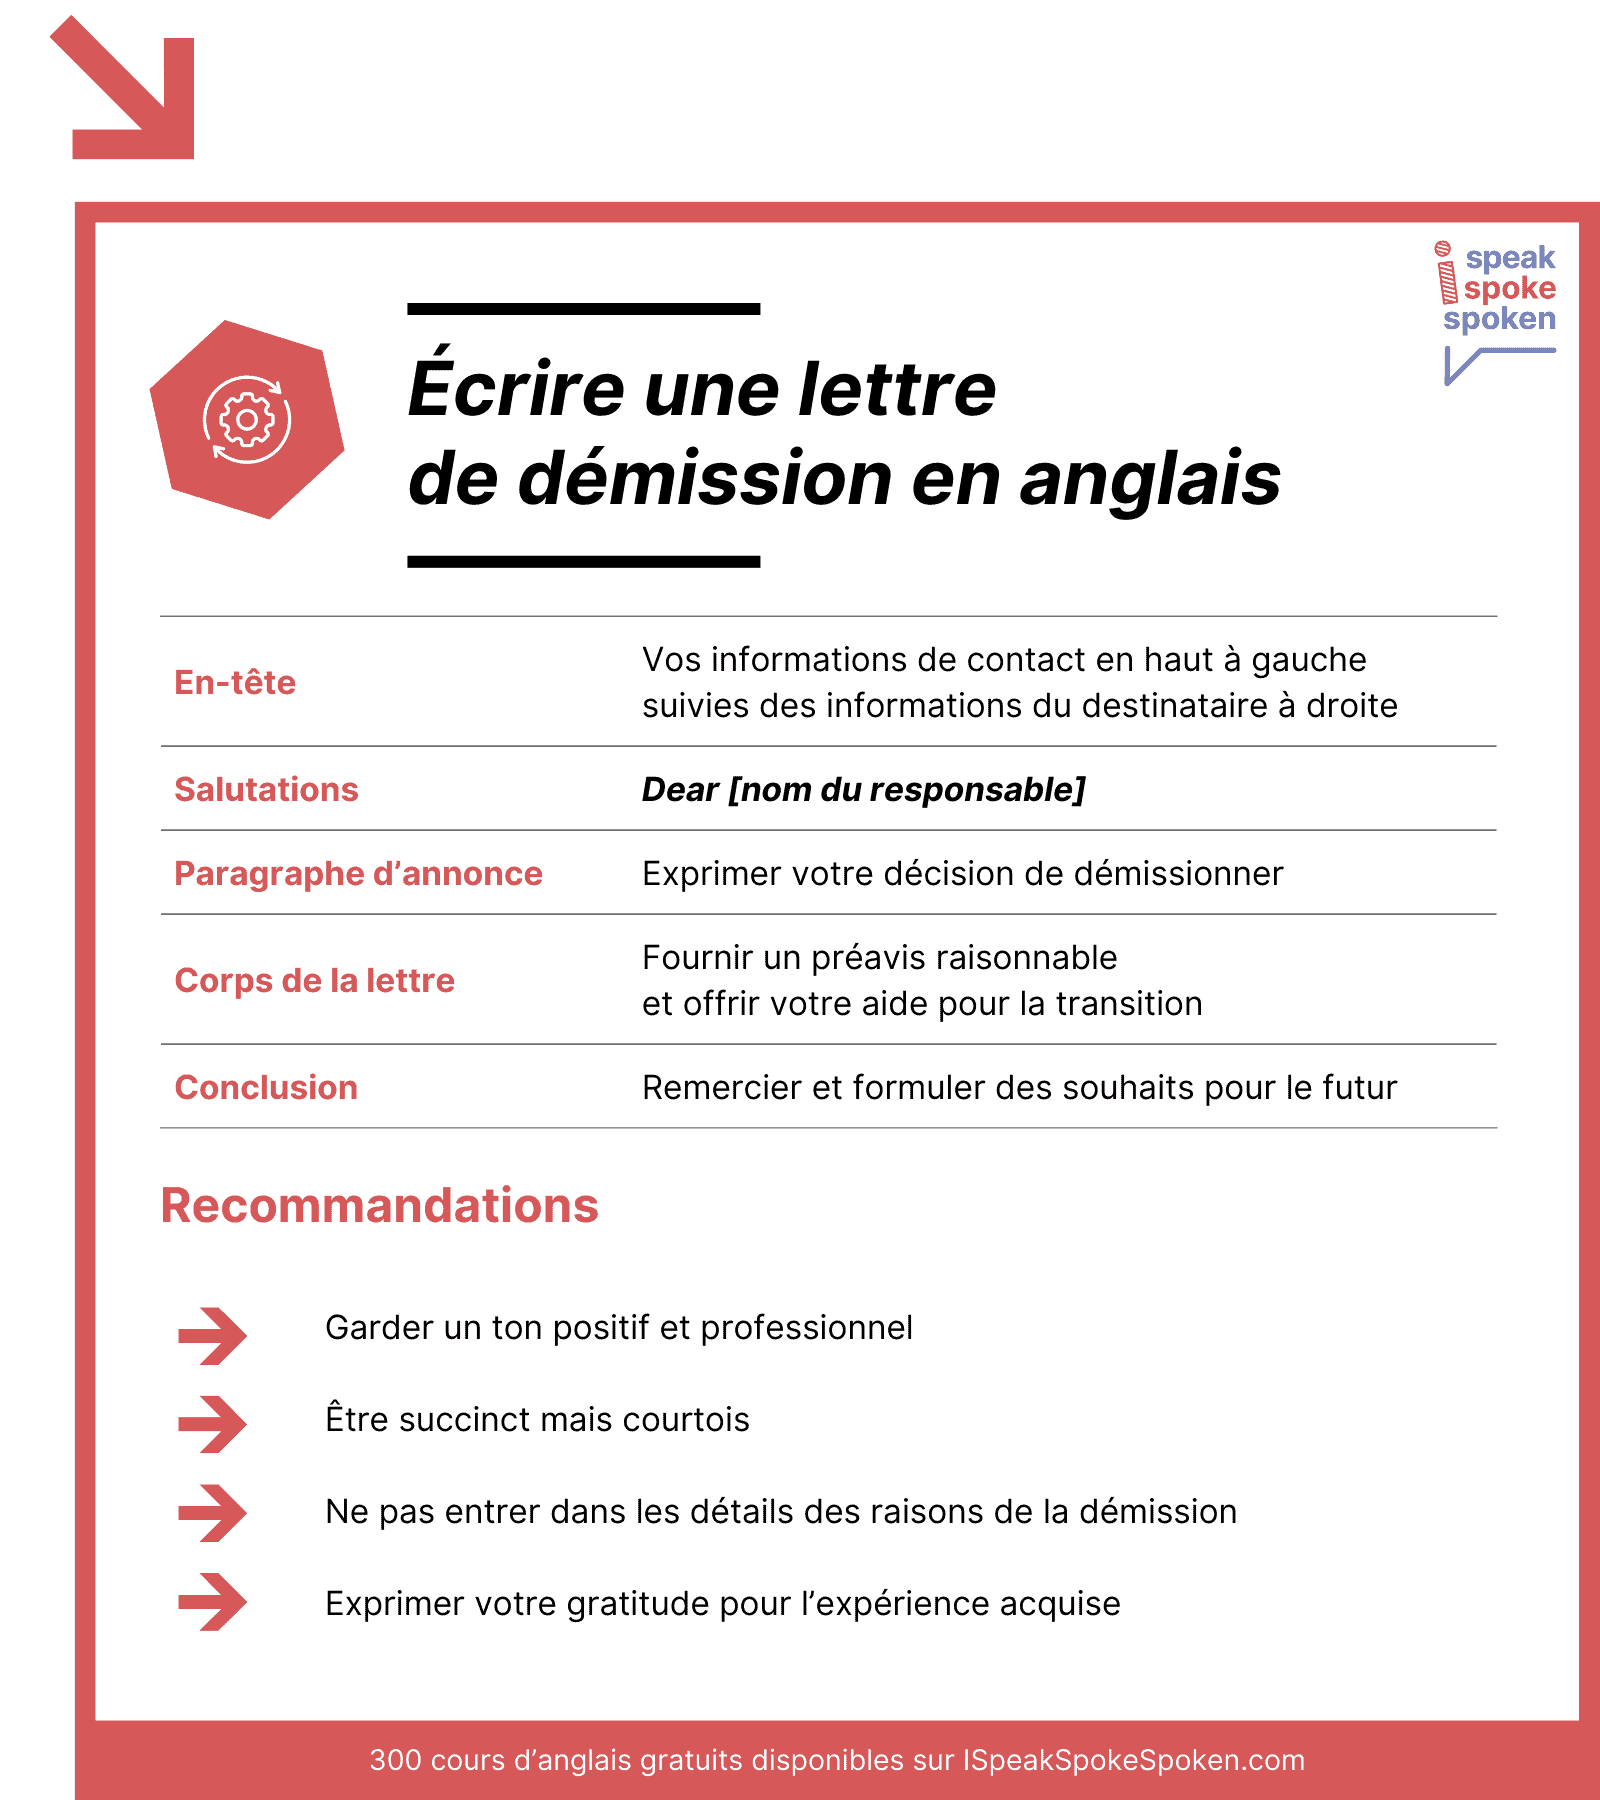 Estructura y consejos para redactar una carta de dimisión en inglés